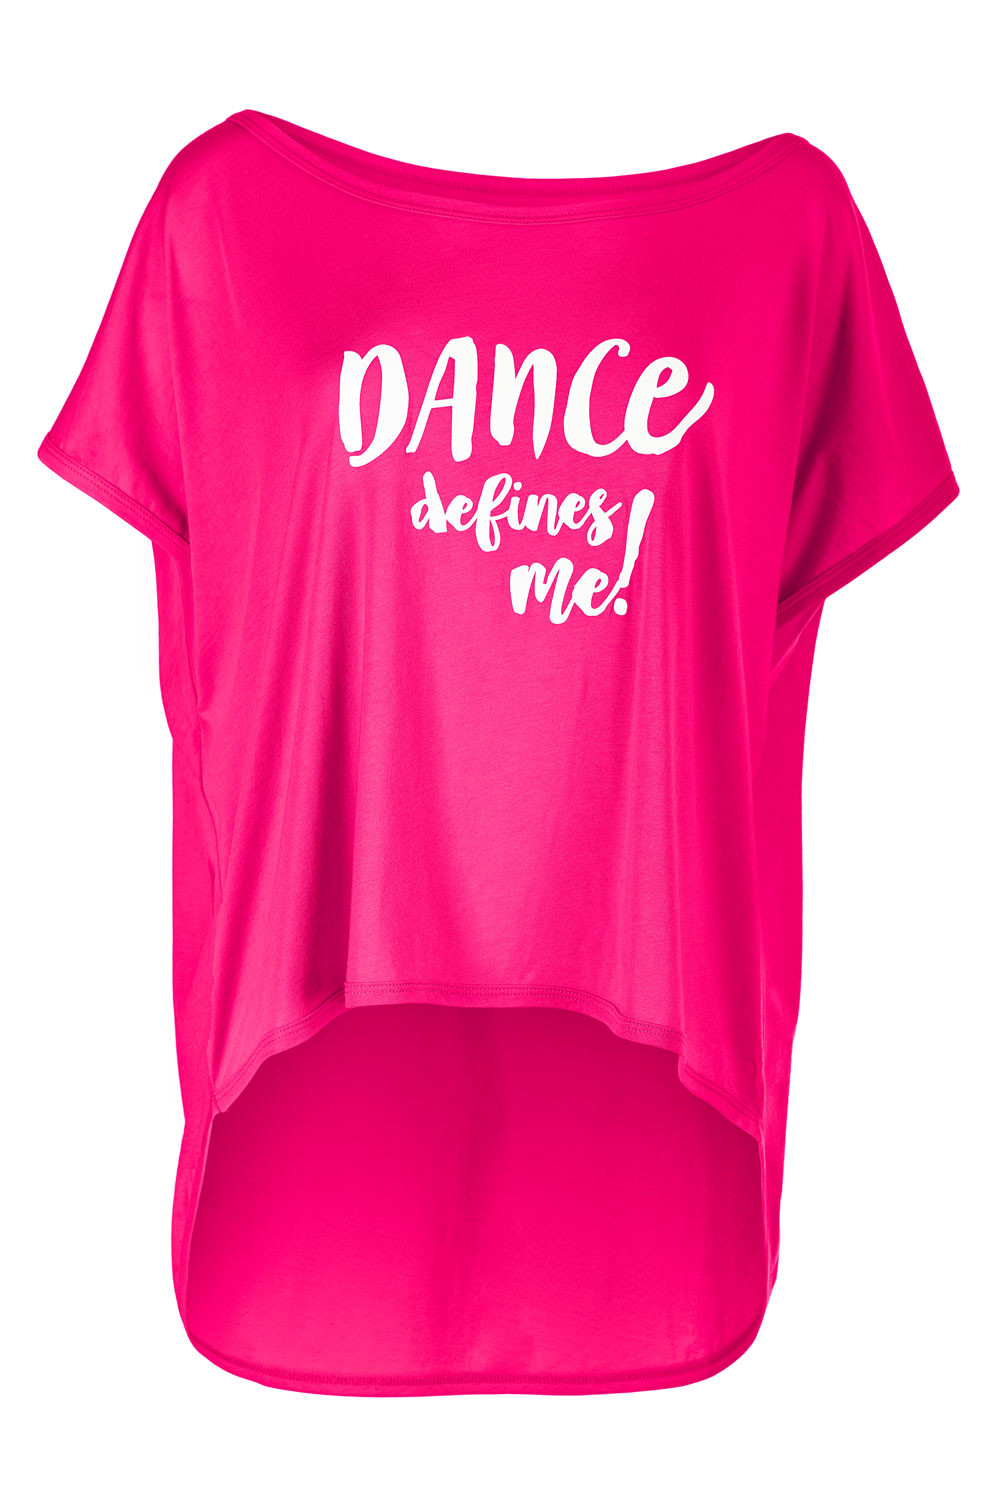 Ultra leichtes Modal-Shirt MCT017 Winshape Style deep defines pink, mit me!“, „DANCE Aufdruck dem Dance